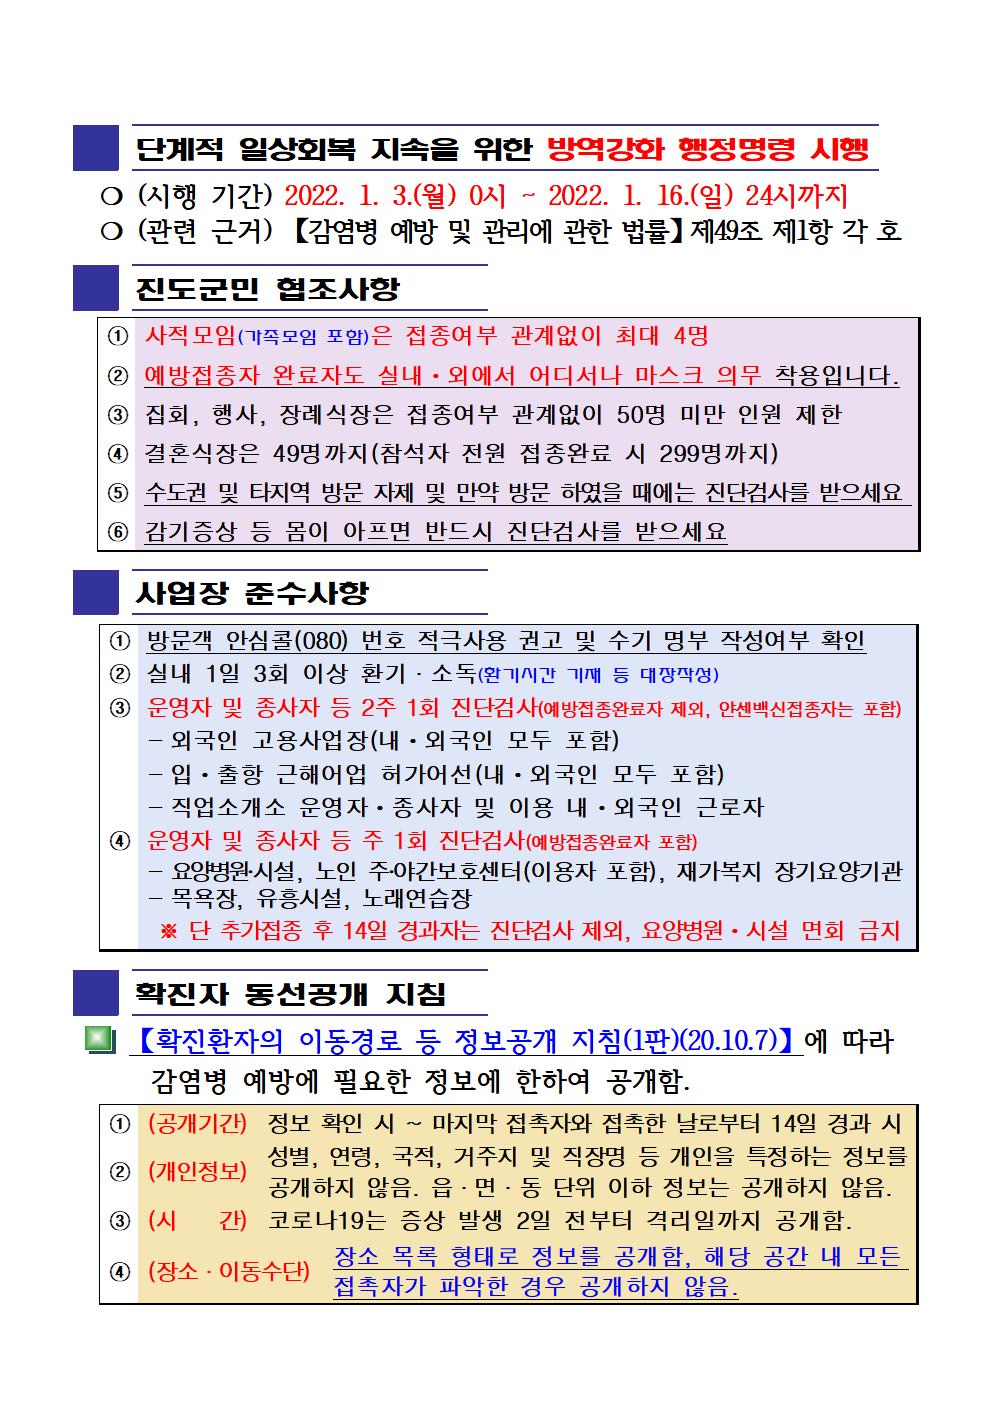 2022년 코로나 19 대응 일일상황보고(1월 13일 24시 기준) 첨부#2